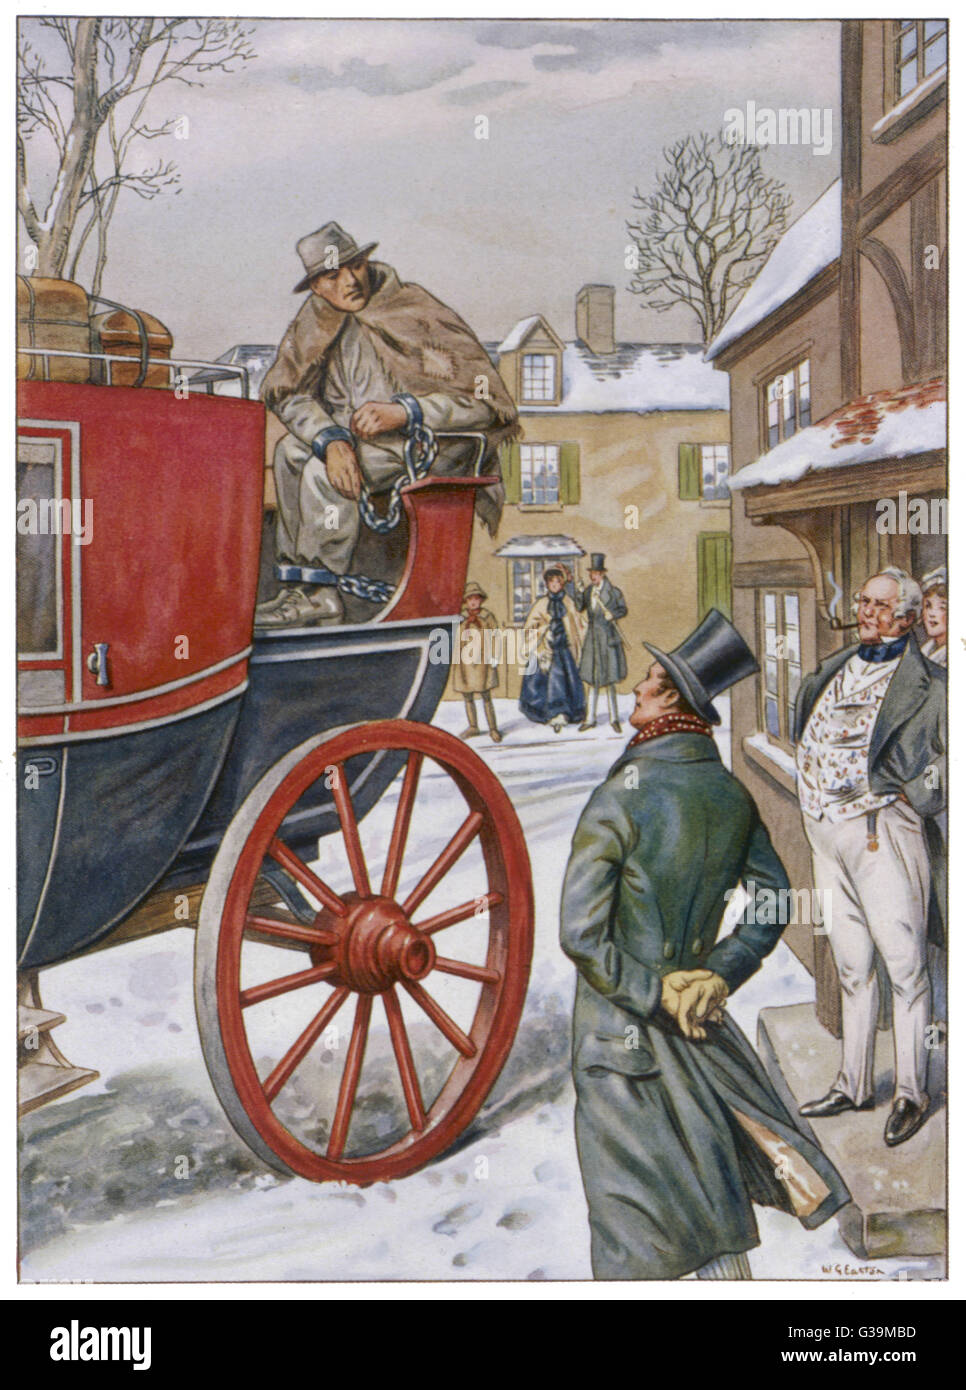 George Loveless, einer der sechs "Märtyrer", in Ketten zu Salisbury, während seiner Reise von Dorchester zu einem Gefängnis Hulk, der "York" in Portsmouth auf Transport zu warten.     Datum: 5. April 1834 Stockfoto